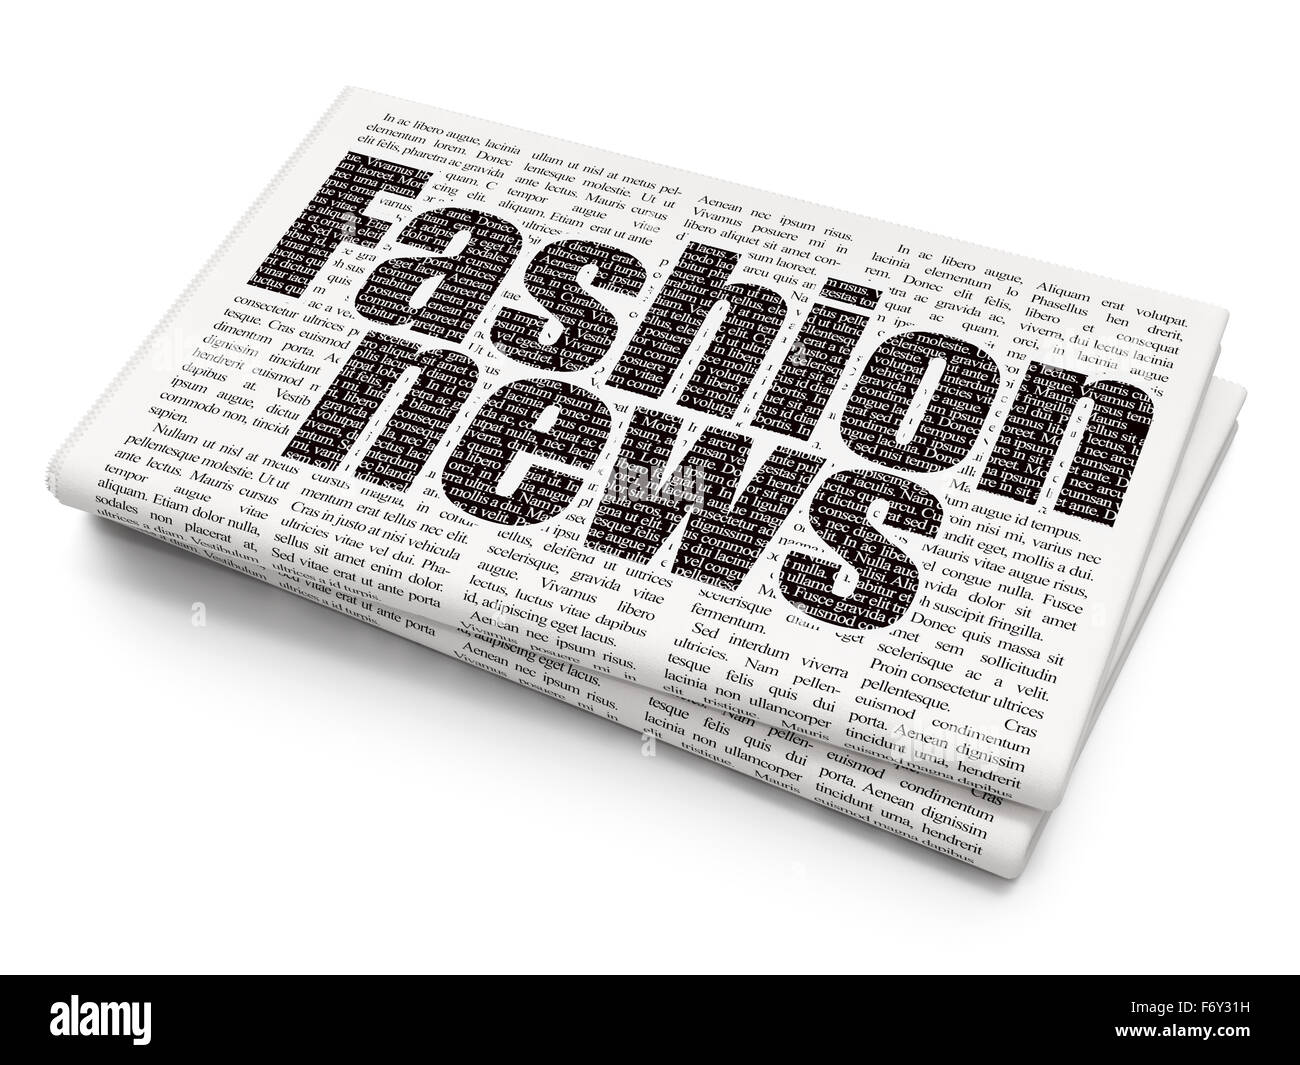 fashion news